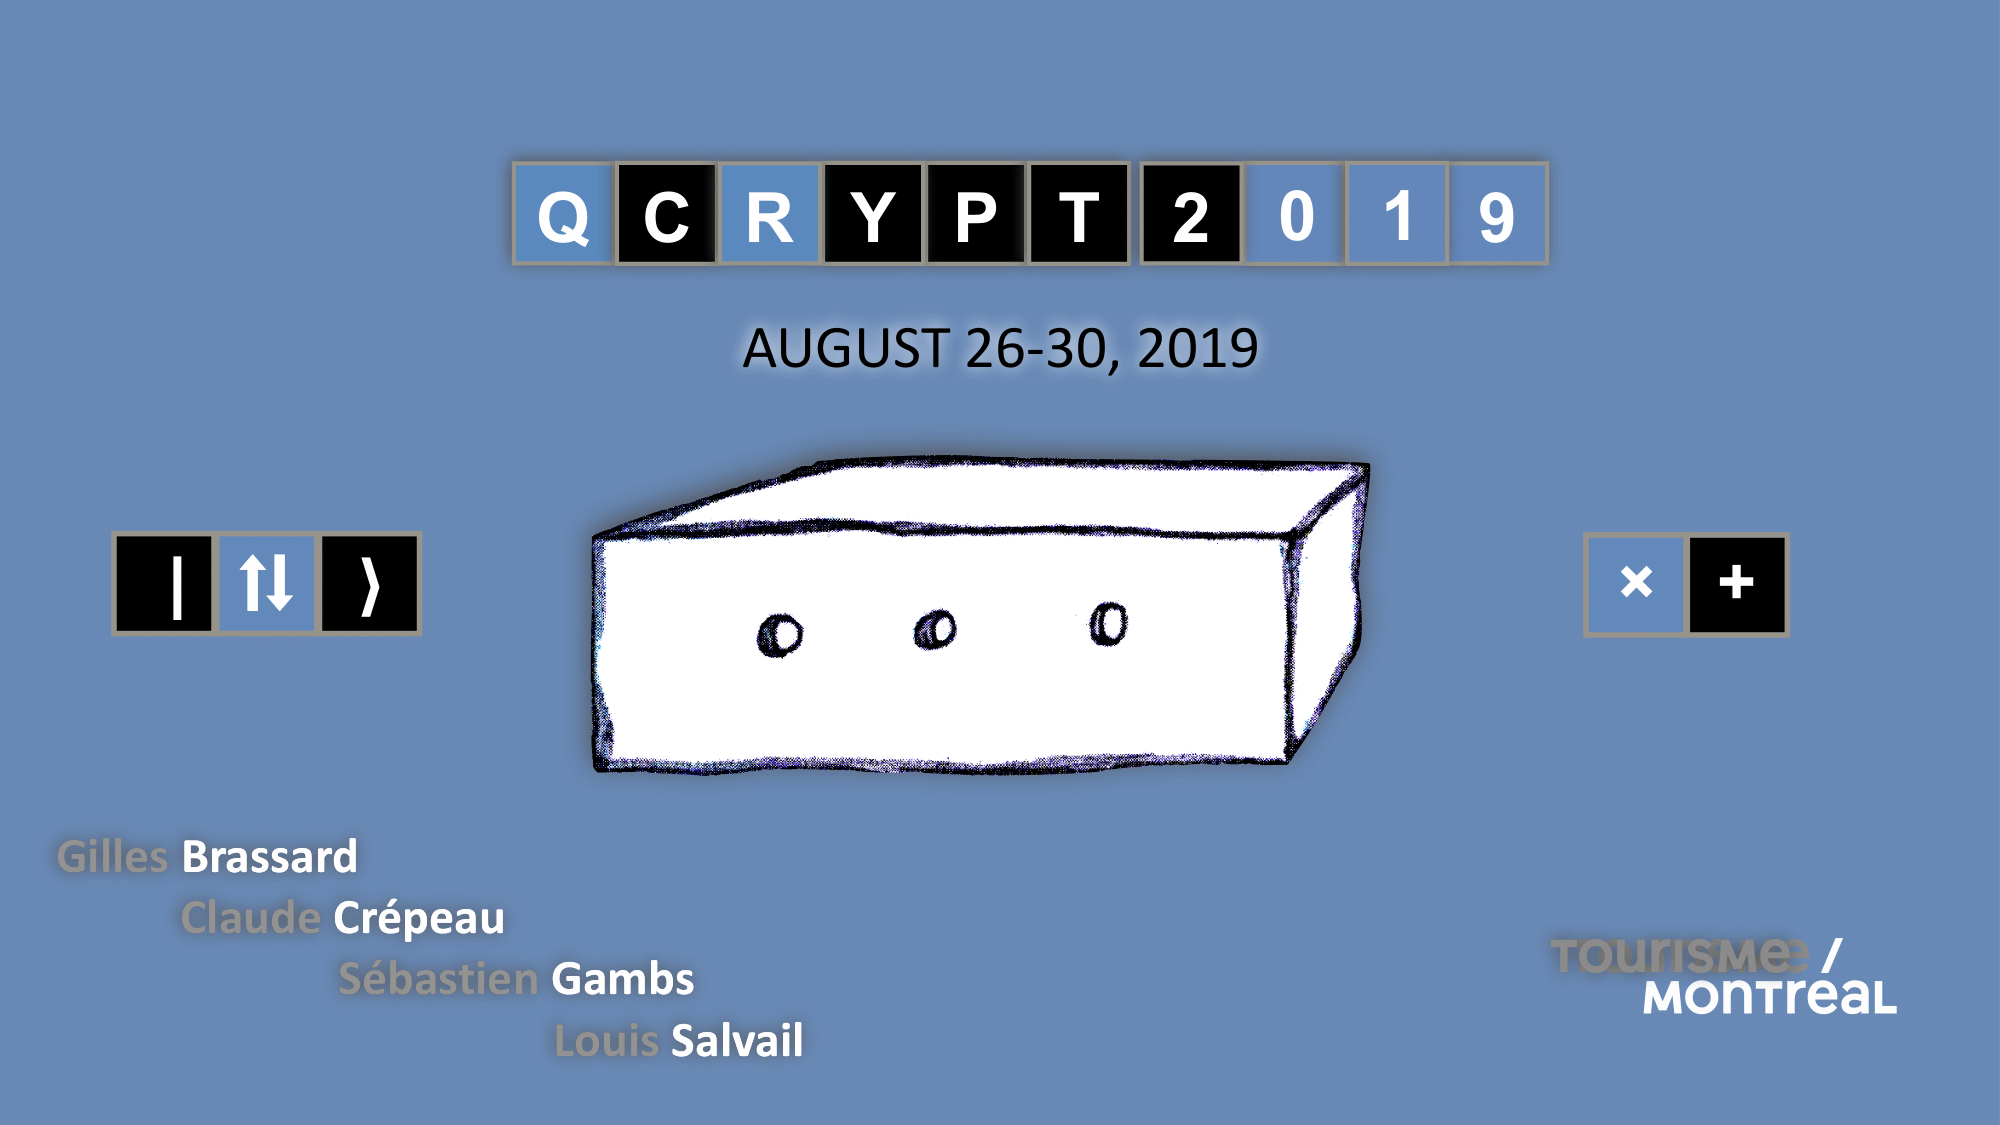 QCrypt 2019